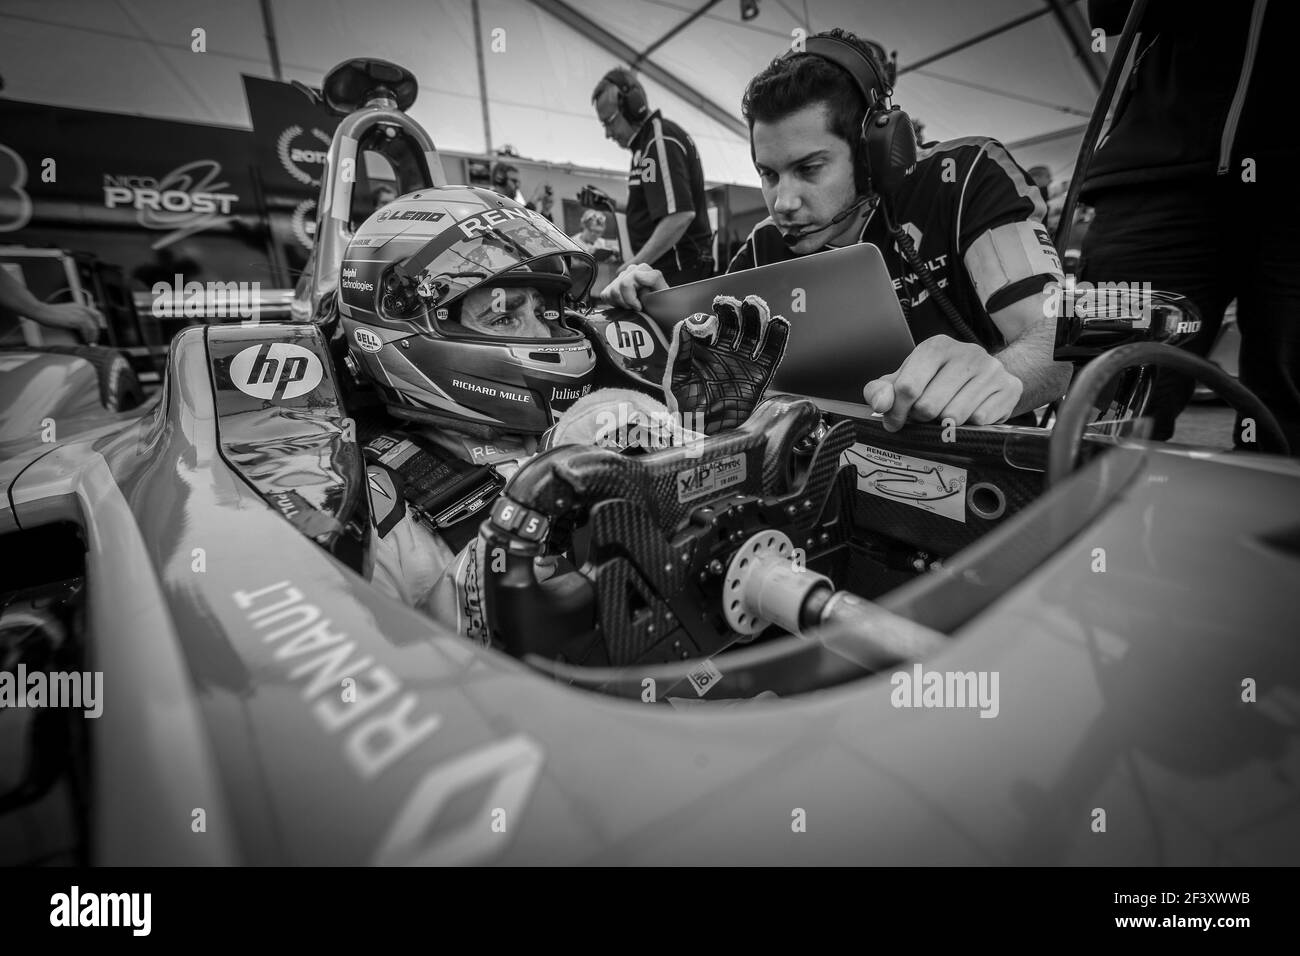 PROST Nicolas (Fra) Formel-E-Team Renault E.DAMS, Portrait während der Formel-E-Meisterschaft 2018, in Berlin, Deutschland, vom 18. Bis 20. Mai - Foto Alexandre Guillaumot / DPPI Stockfoto